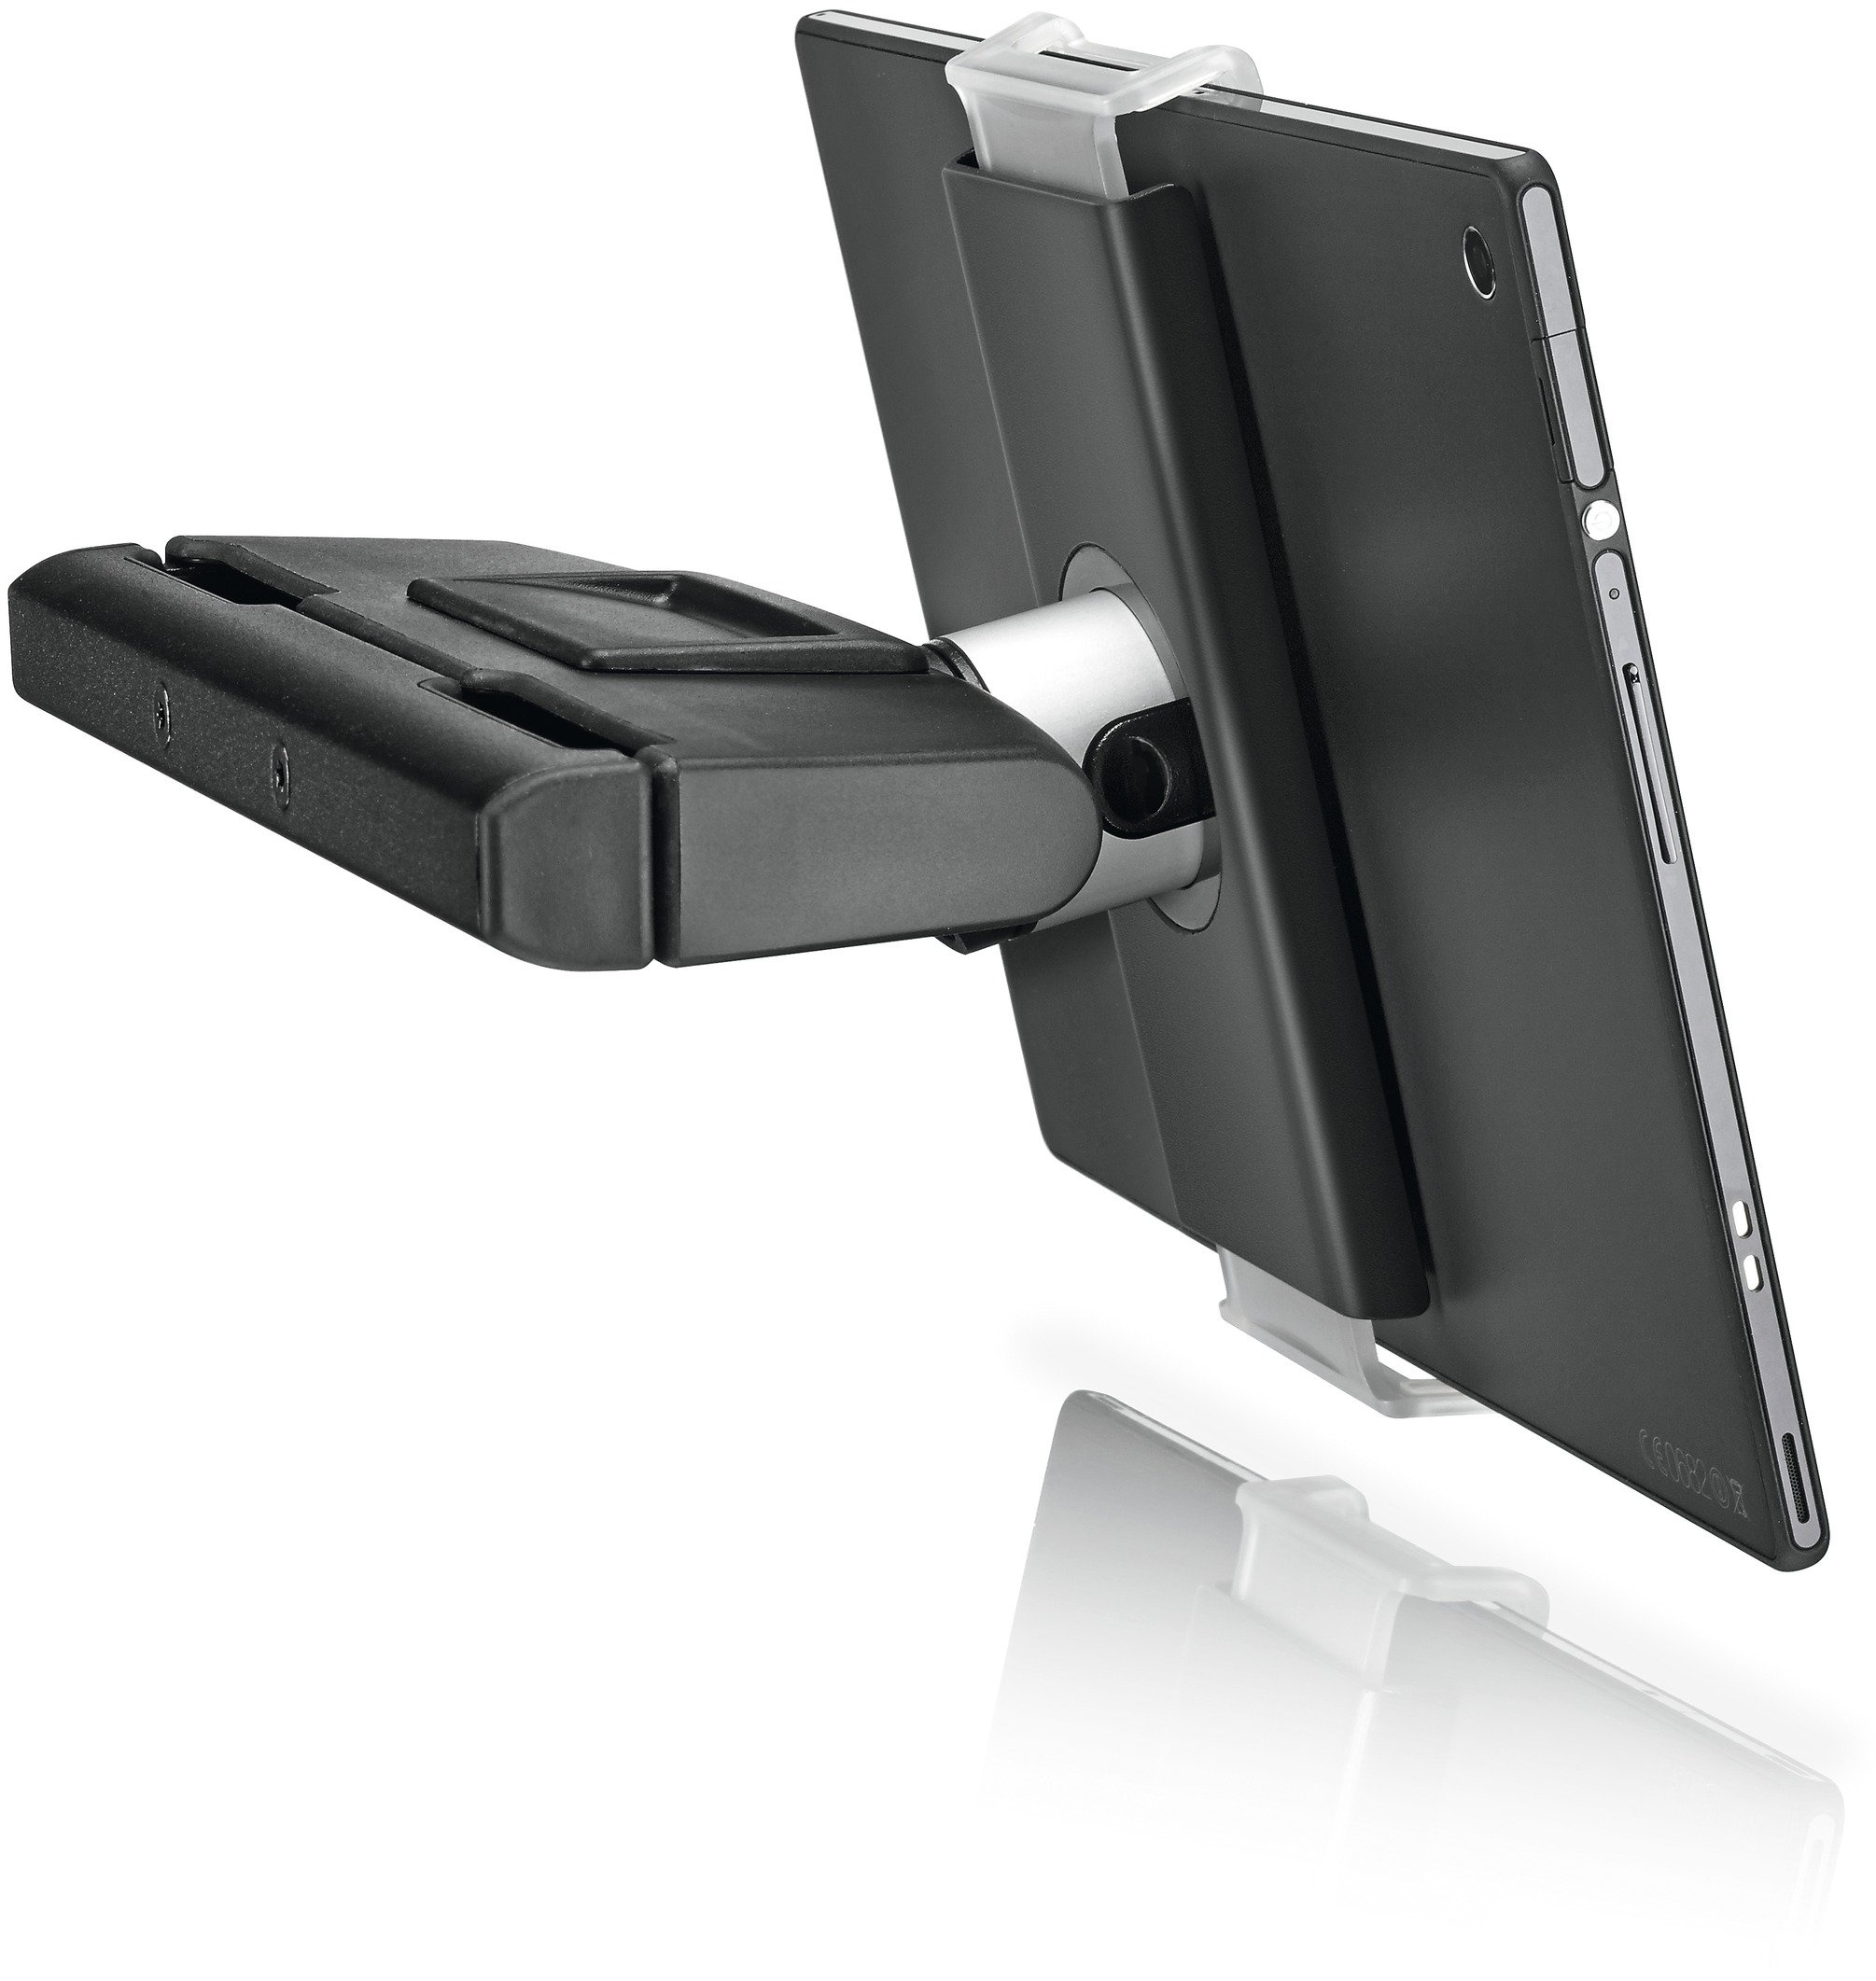 Vogel's TMS 1020 Tablet Kopfstützenhalter für alle Tablets von 7-13 Zoll, Schwenkbar, Bis zu 15° neigbar, Auch geeignet für iPad Air/Mini/Pro, Samsung Galaxy Tab/Note, Nexus 7/10, Schwarz